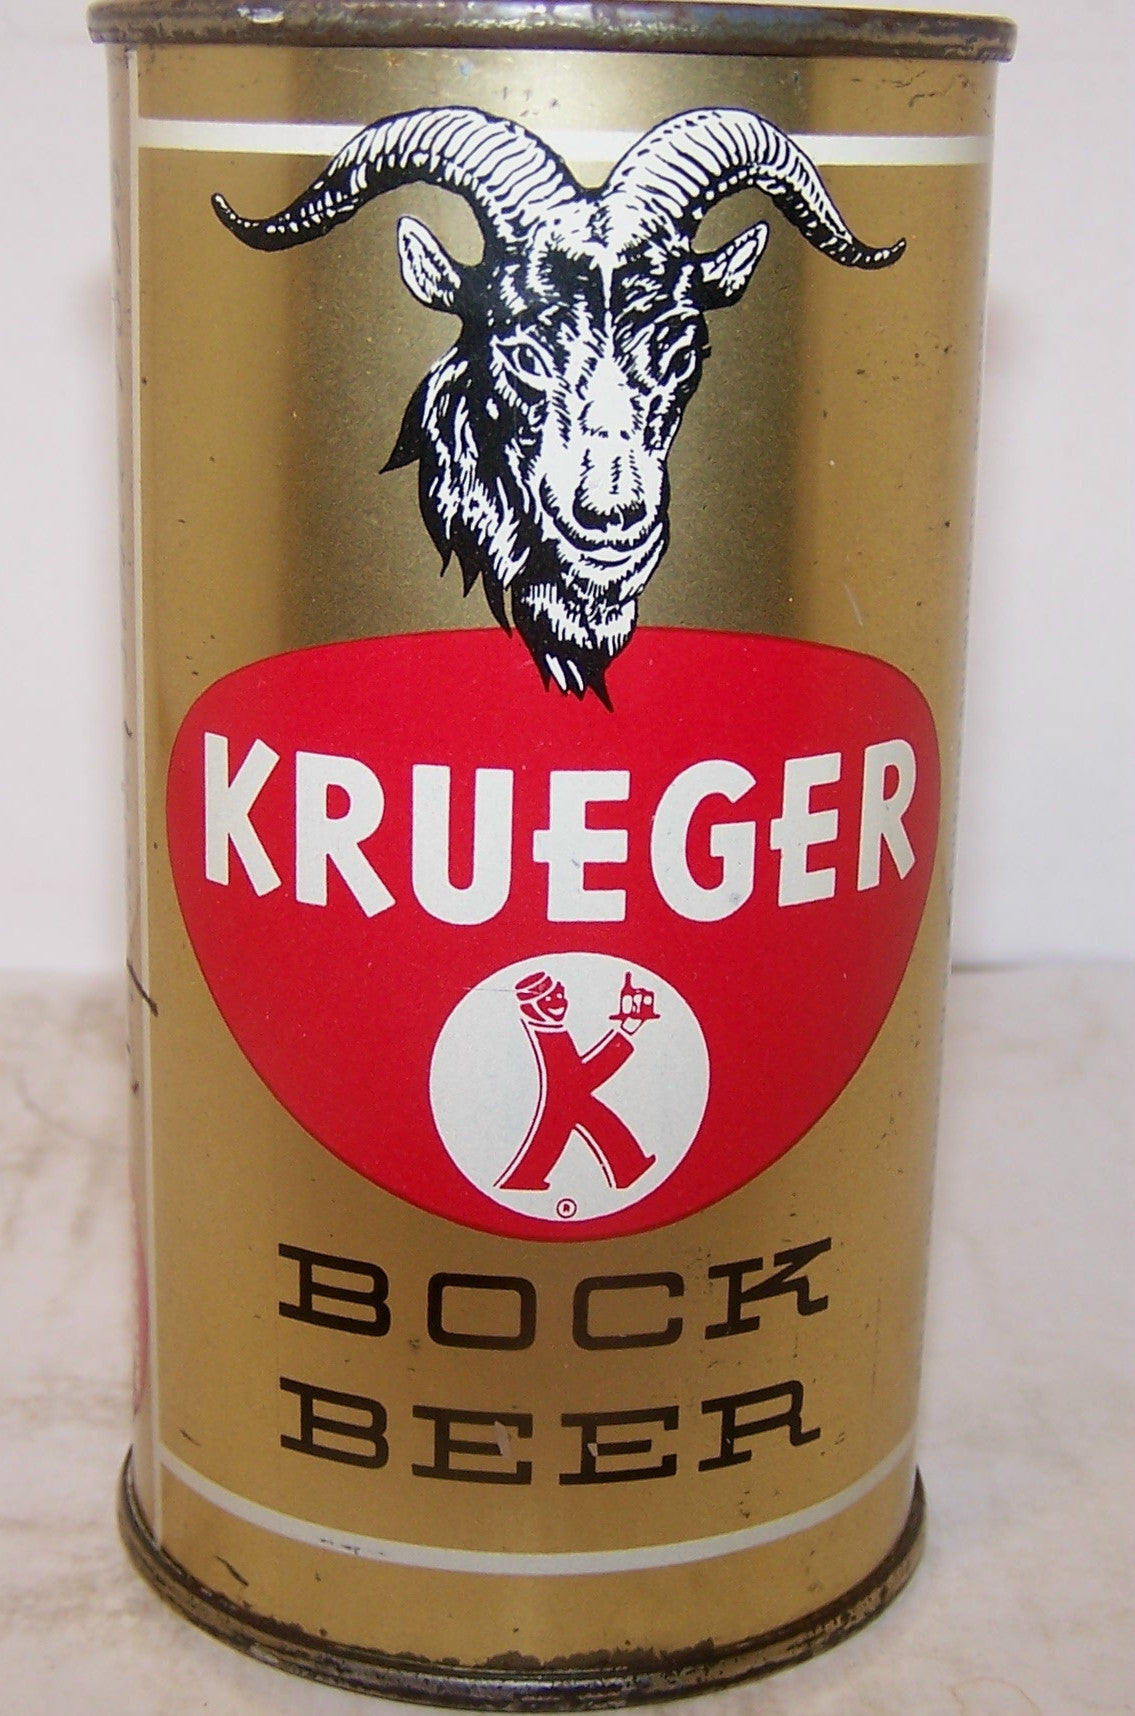 Krueger Bock beer, USBC 90-28, grade 1/1- Sold 12/13/14